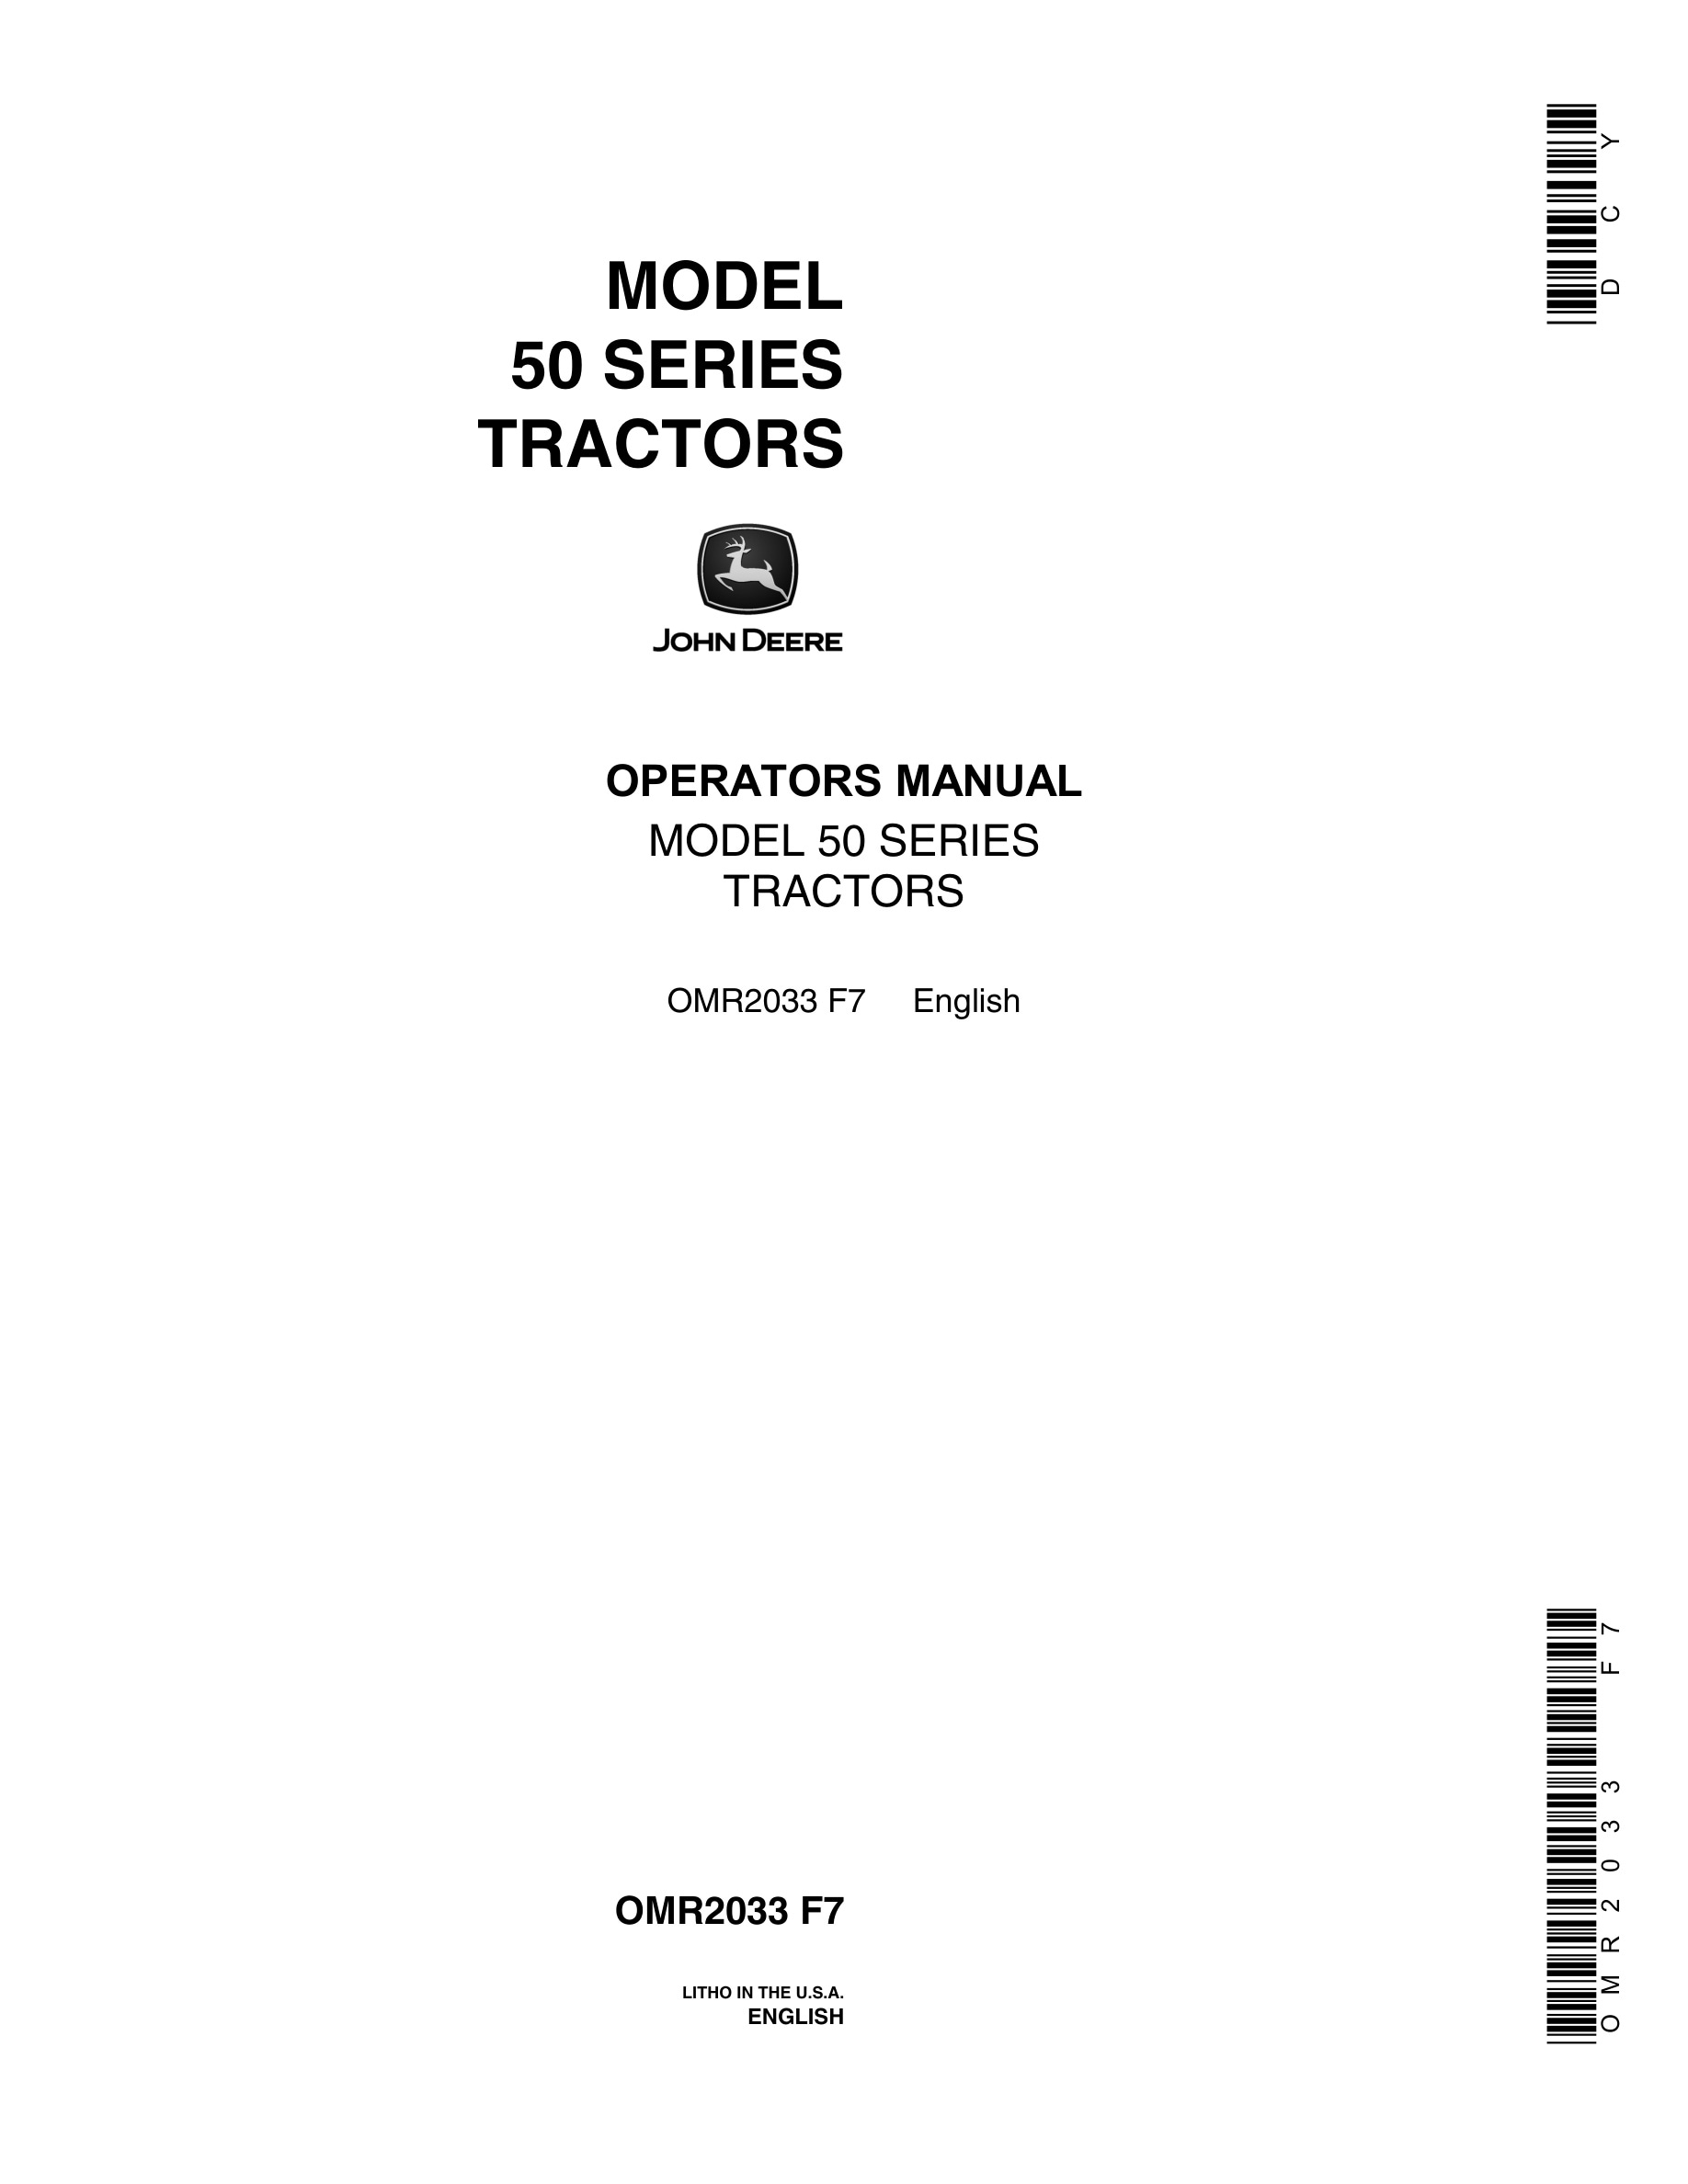 John Deere Model 50 Tractor Operator Manual OMR2033-1